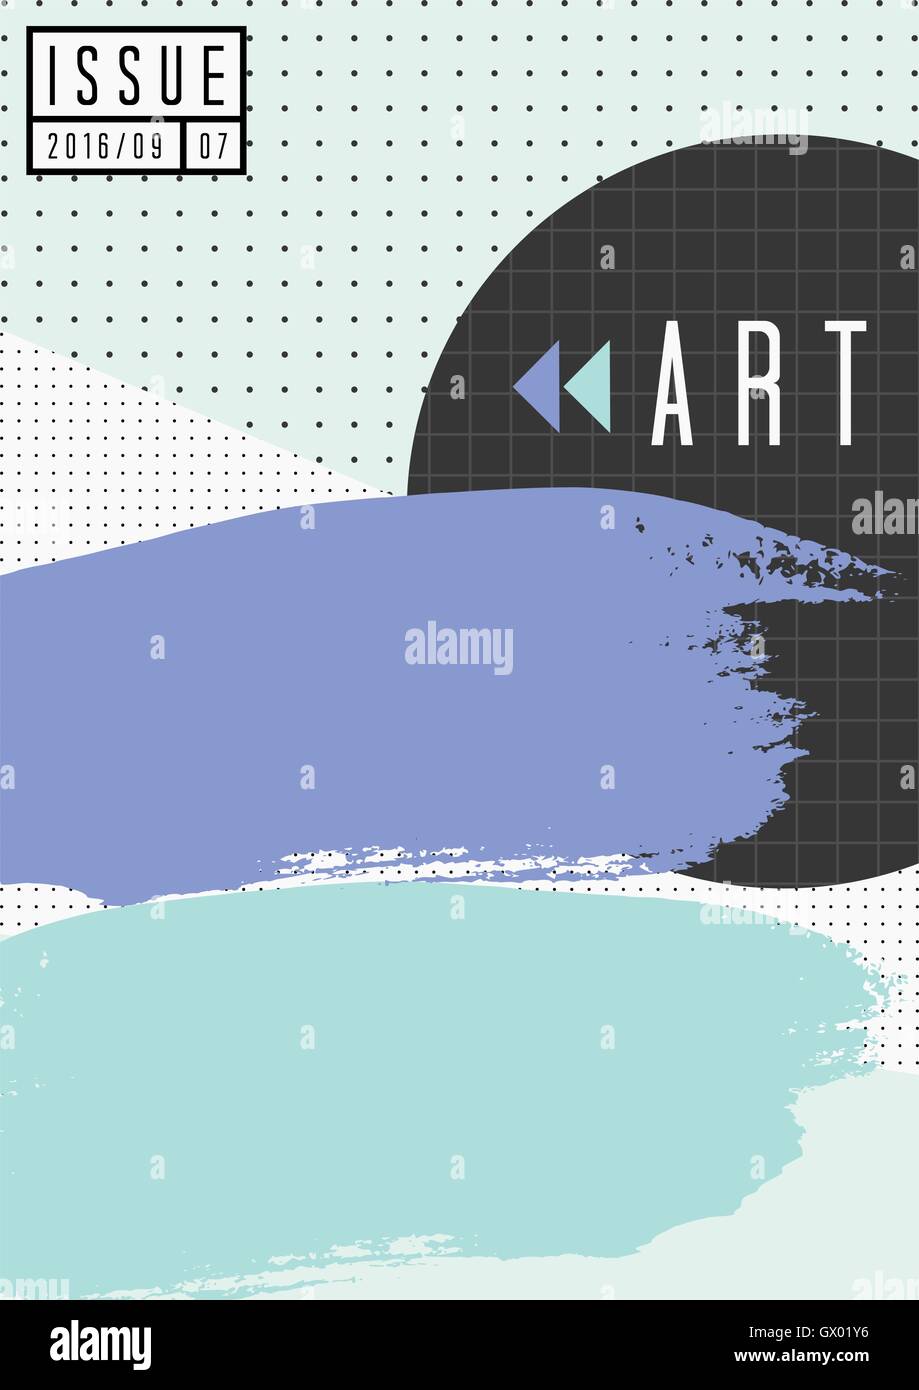 Abstrakte Komposition Collage in schwarz, weiß, blau und violett. Minimalistischen Stil Plakat, Broschüre, Magazin-Cover-Design. Stock Vektor